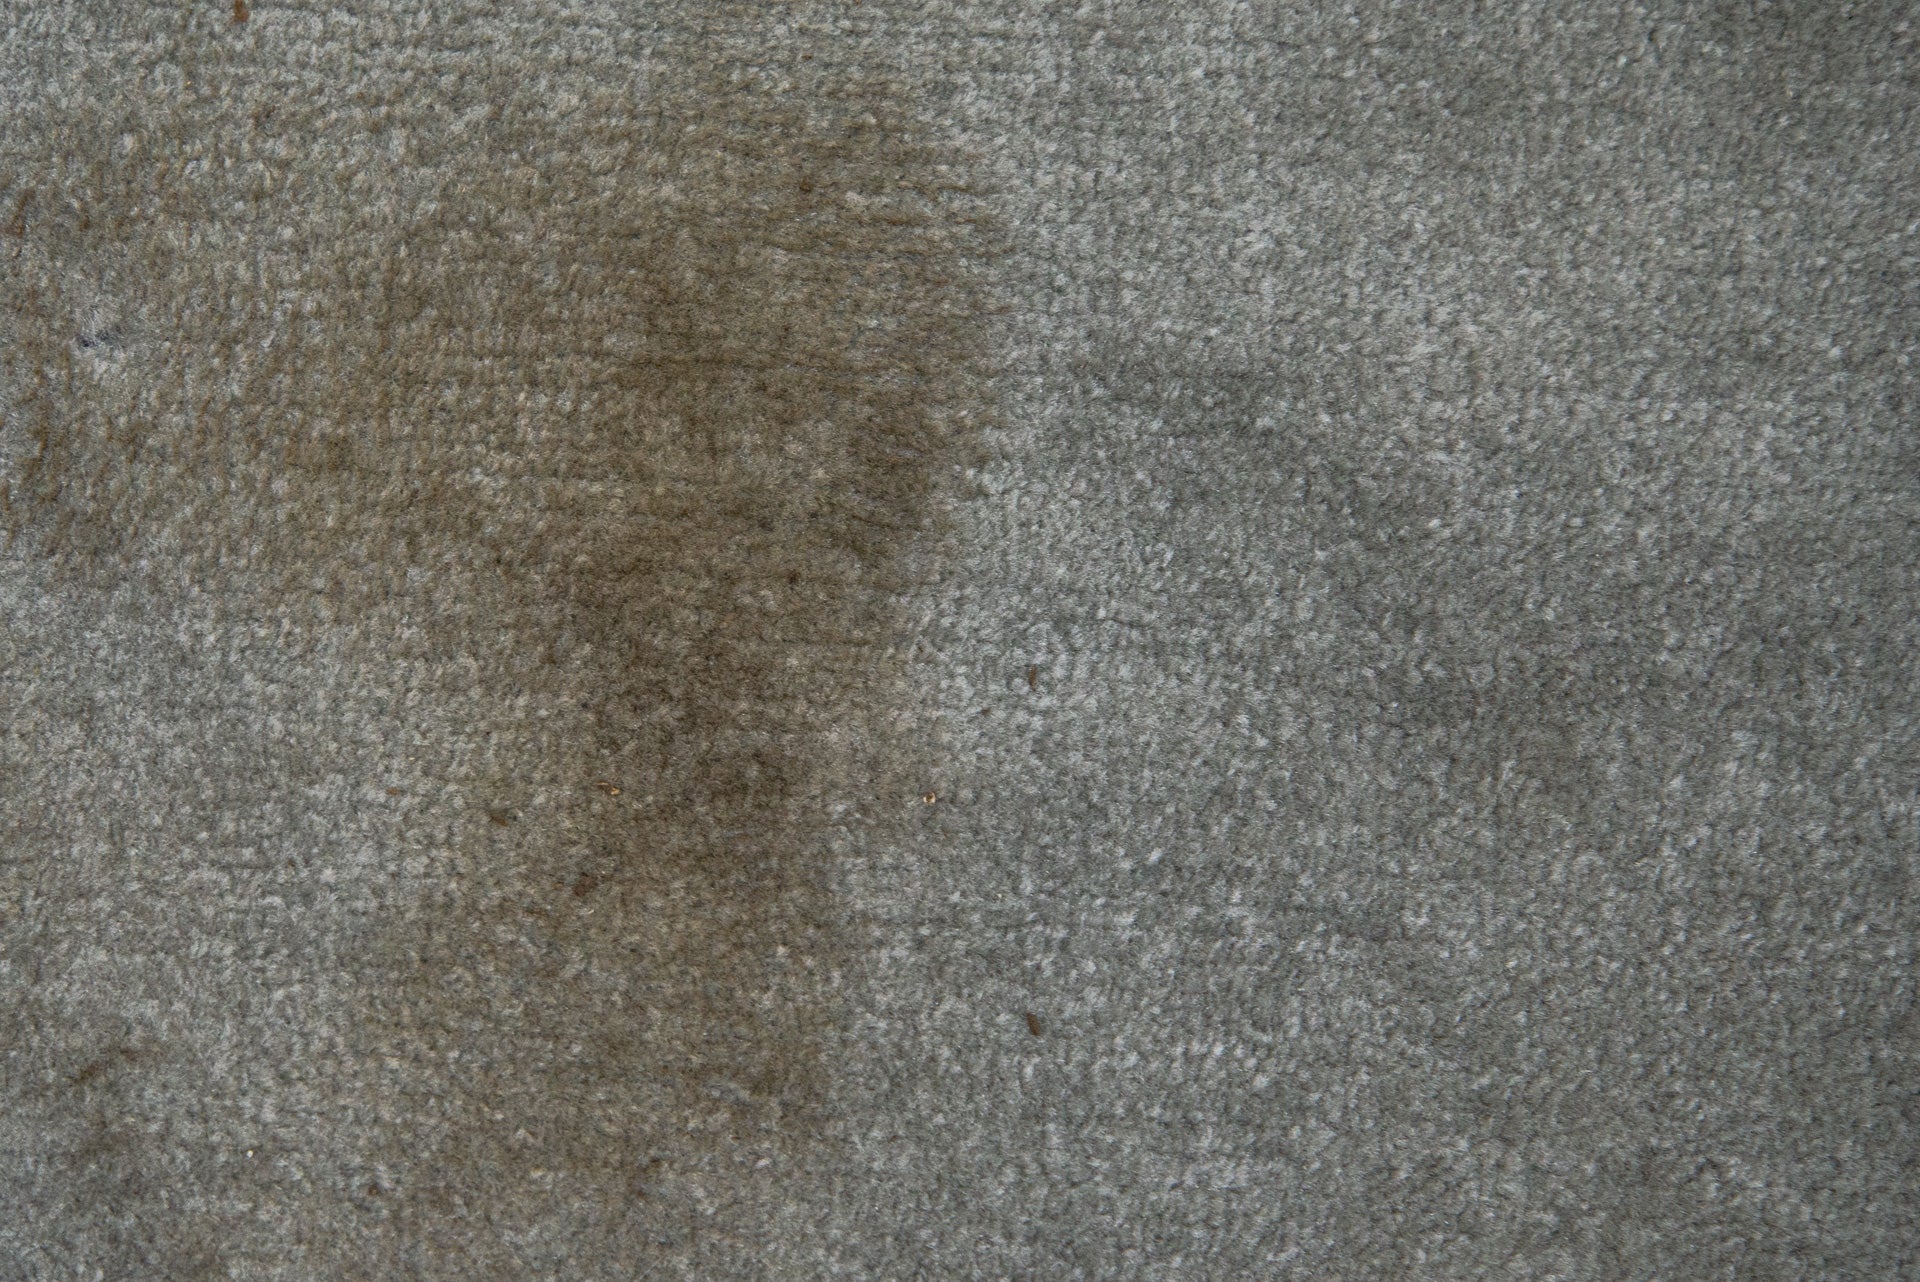 Une tache de boue sur un tapis